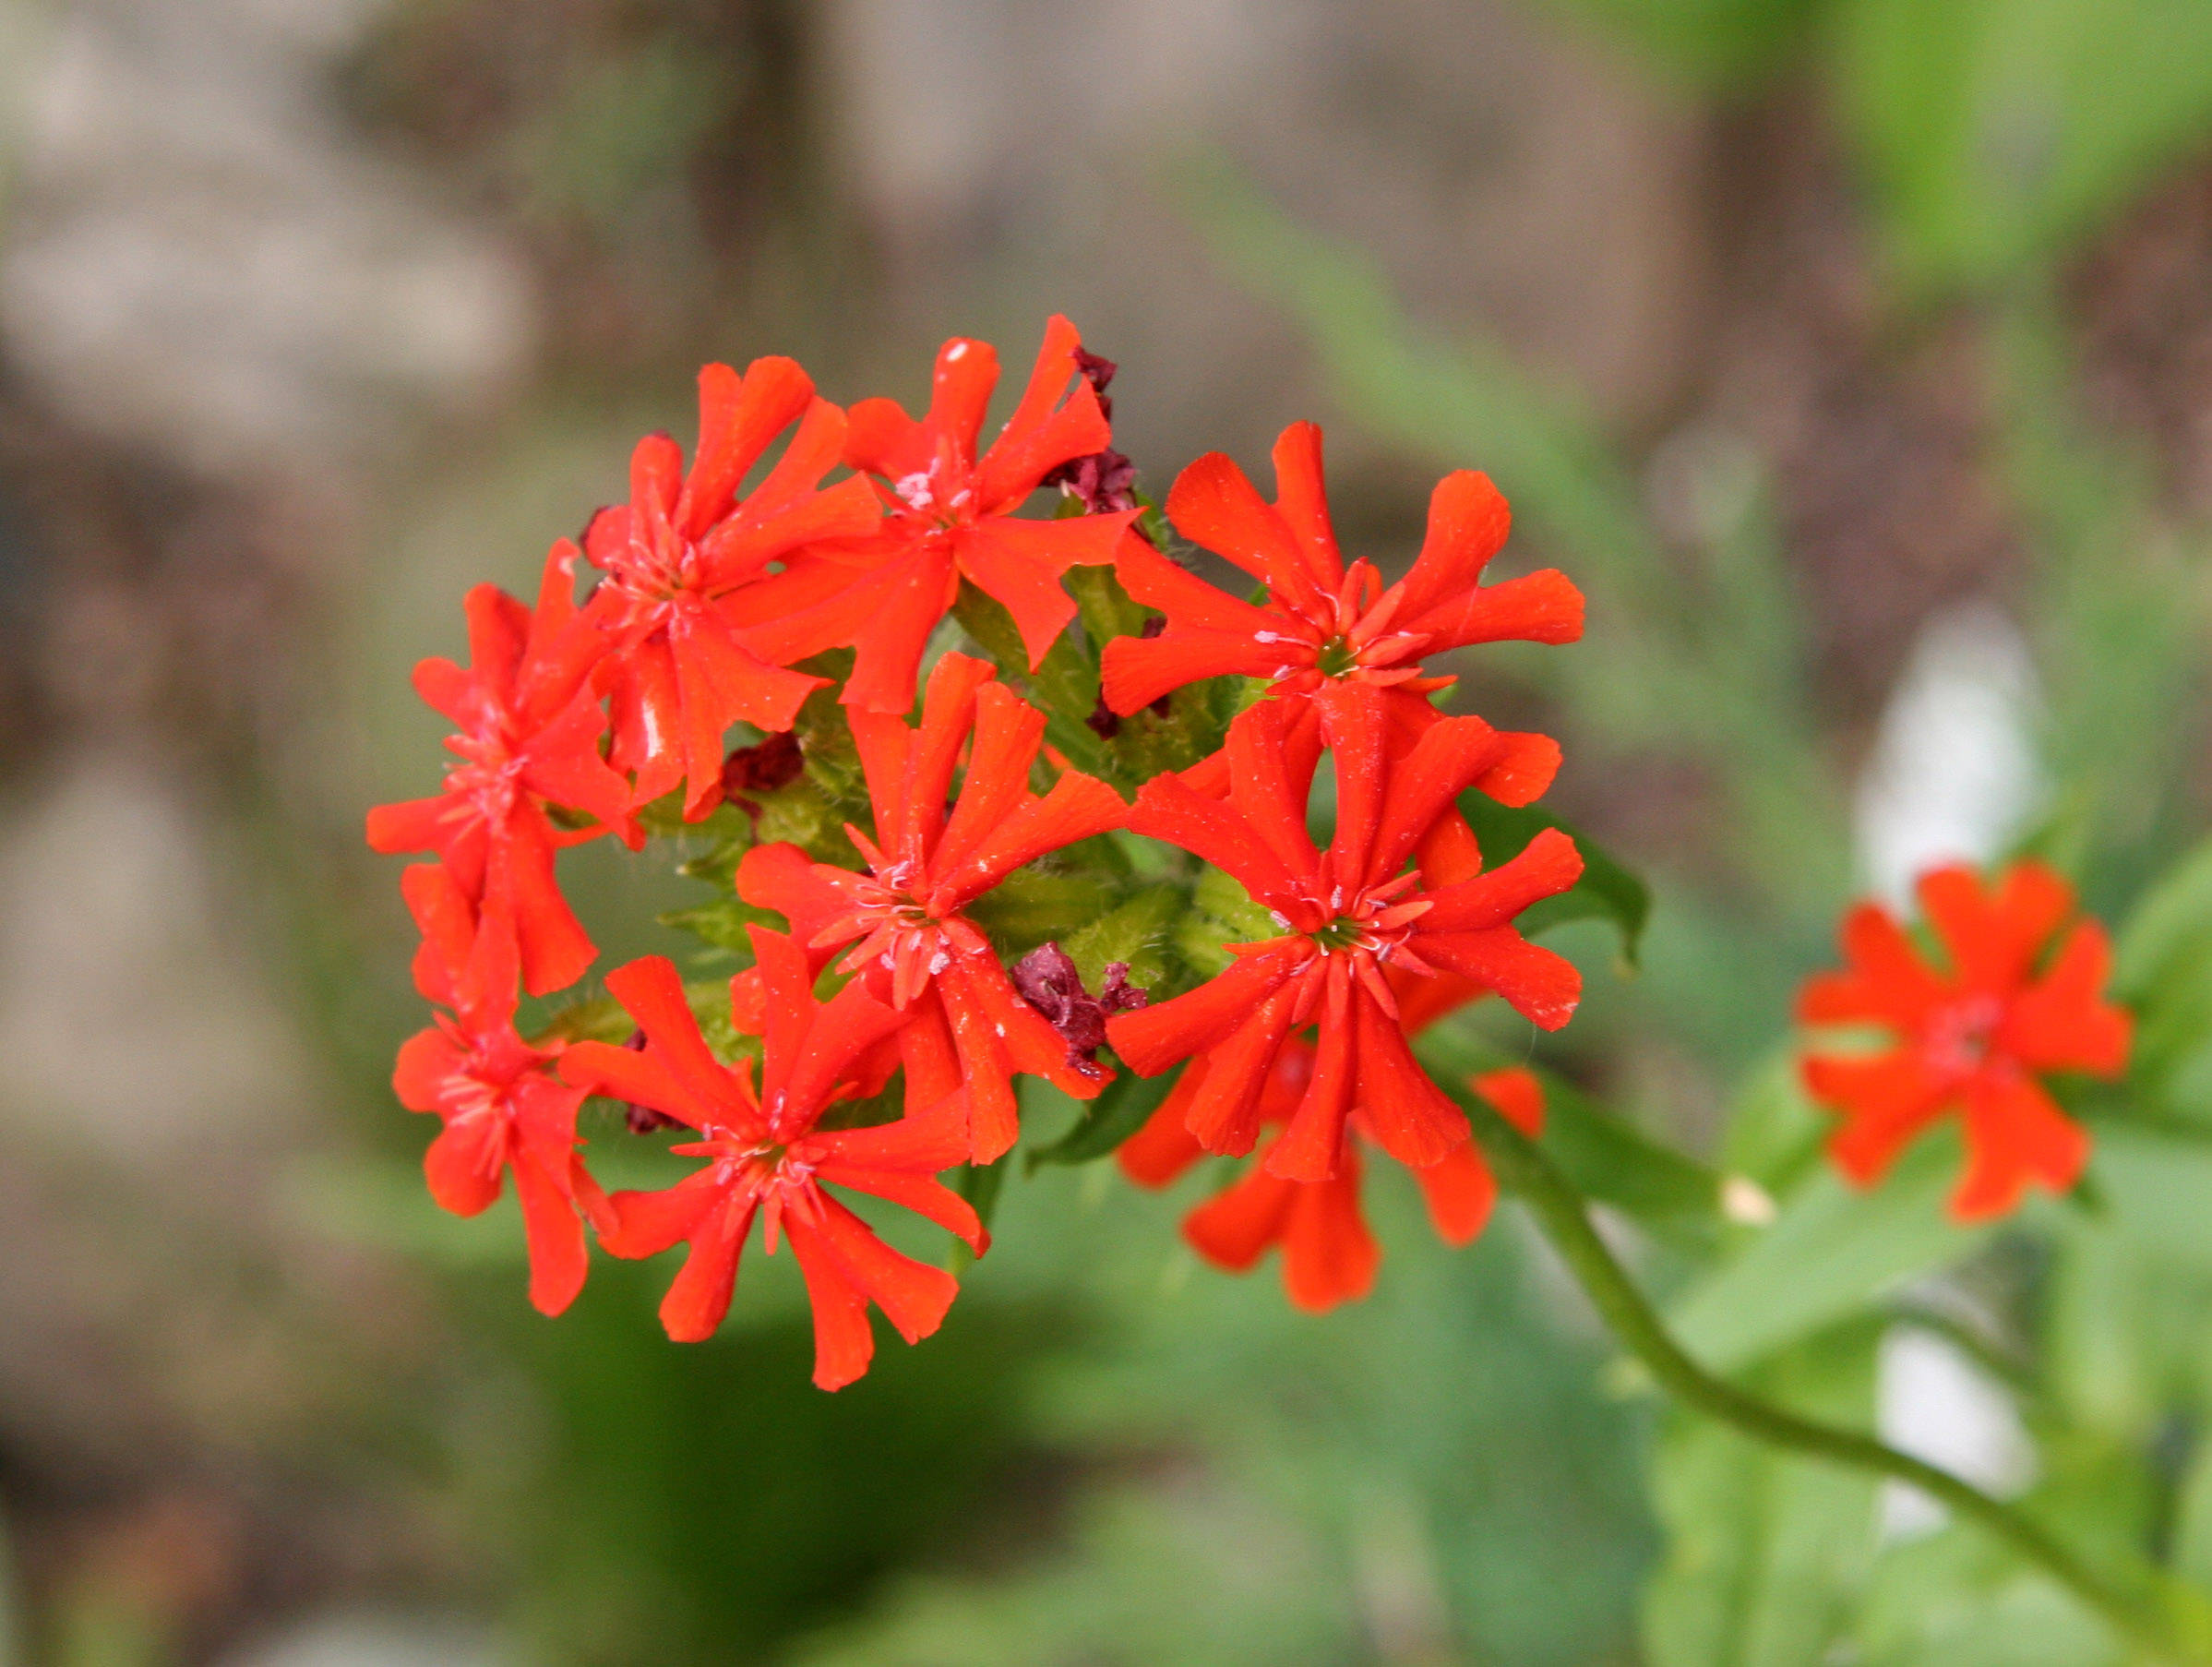 Lychnis chalcedonica or Maltese Cross Flower